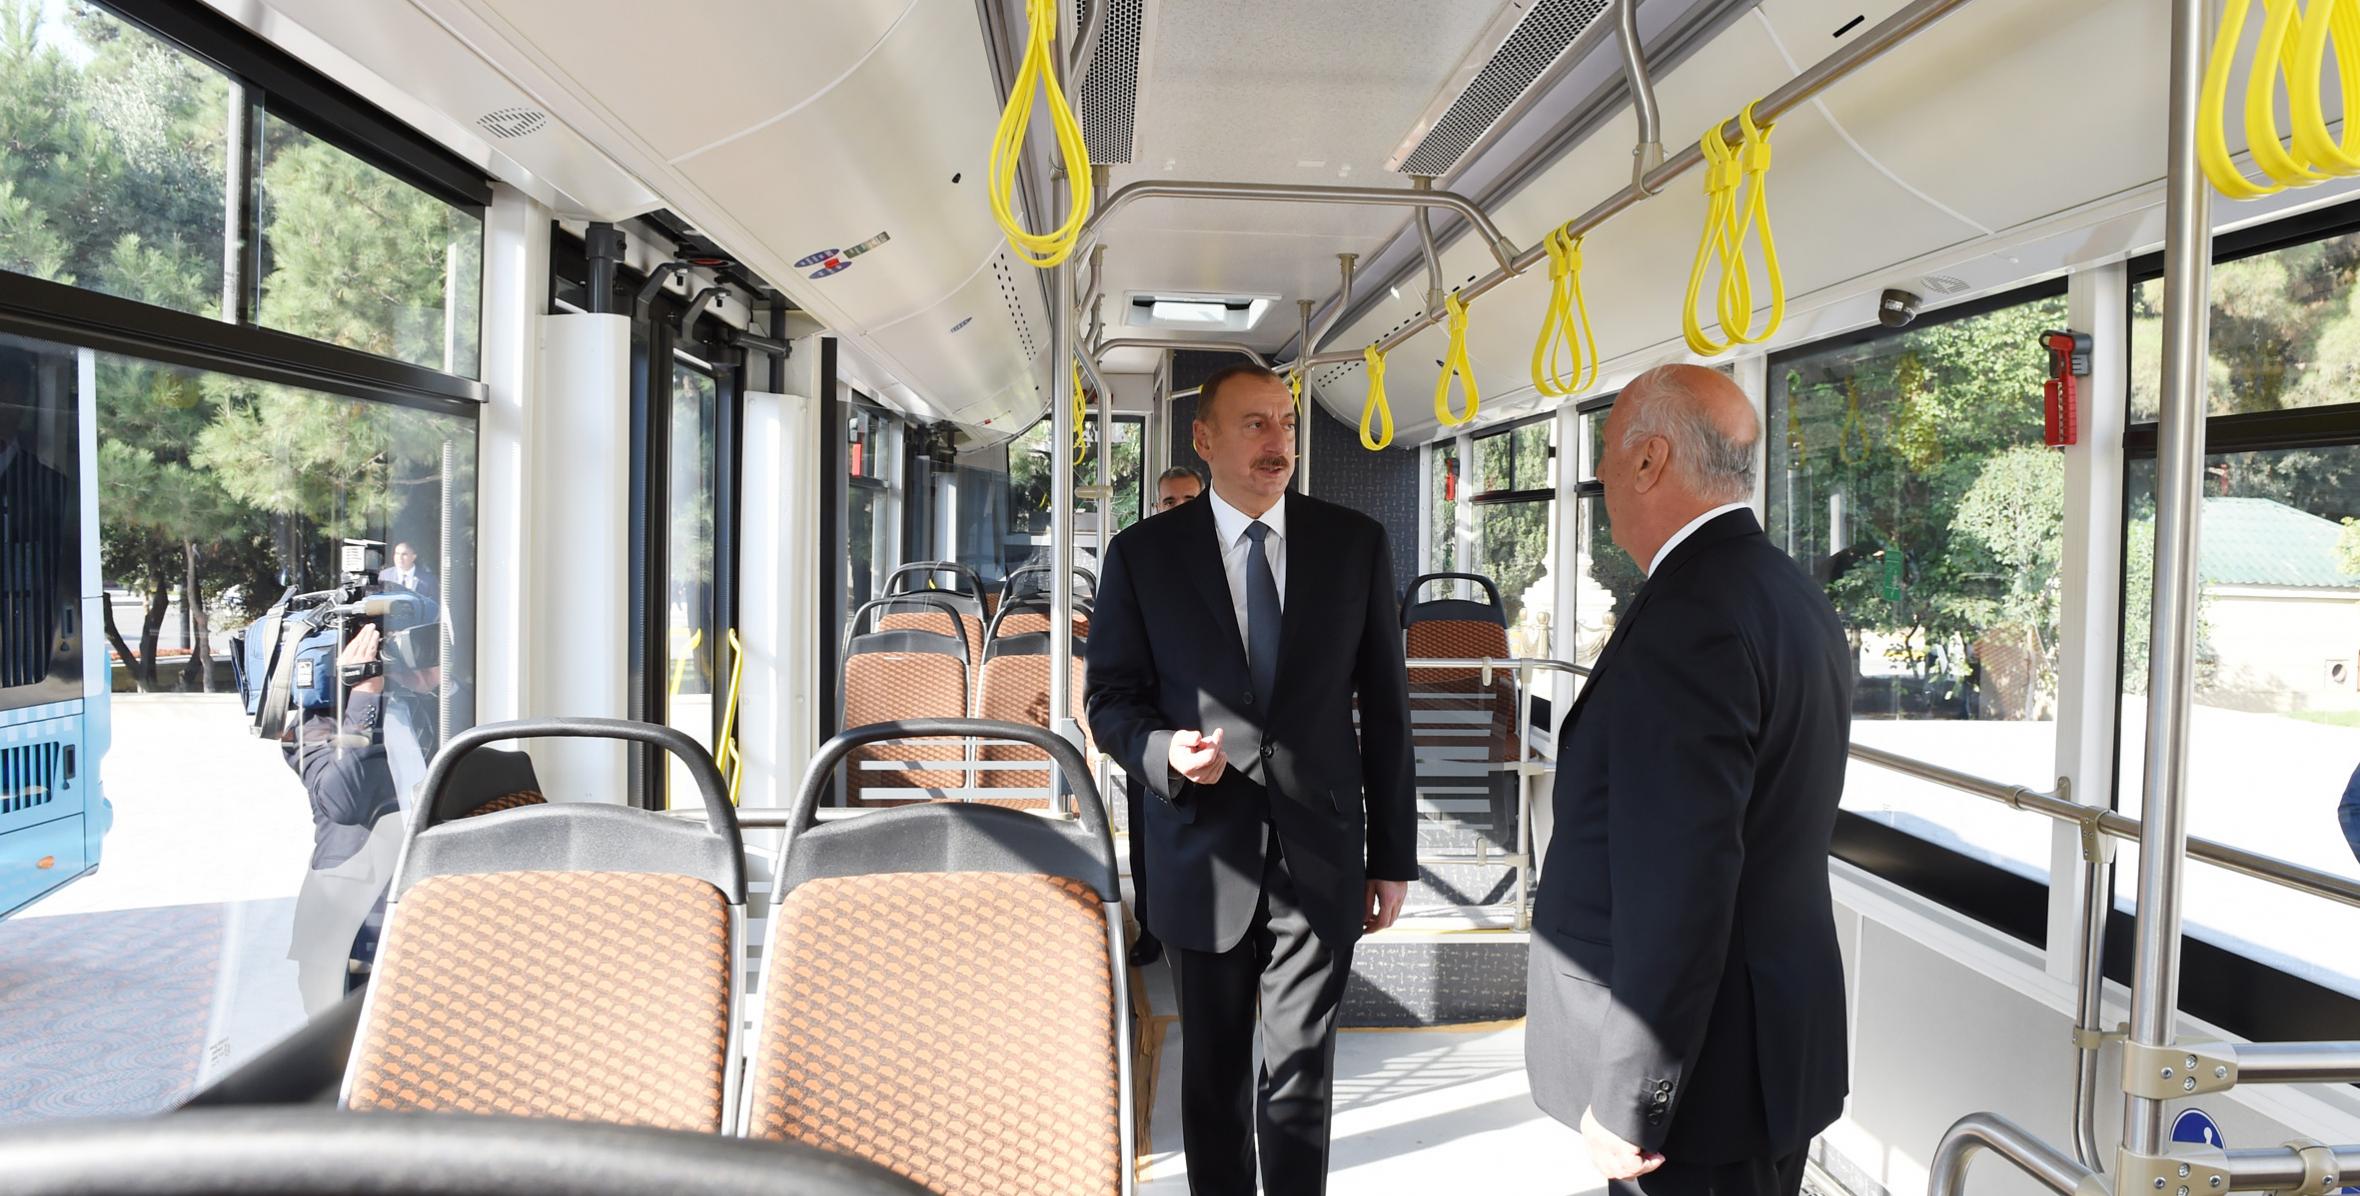 Ilham Aliyev viewed new buses in Sumgayit